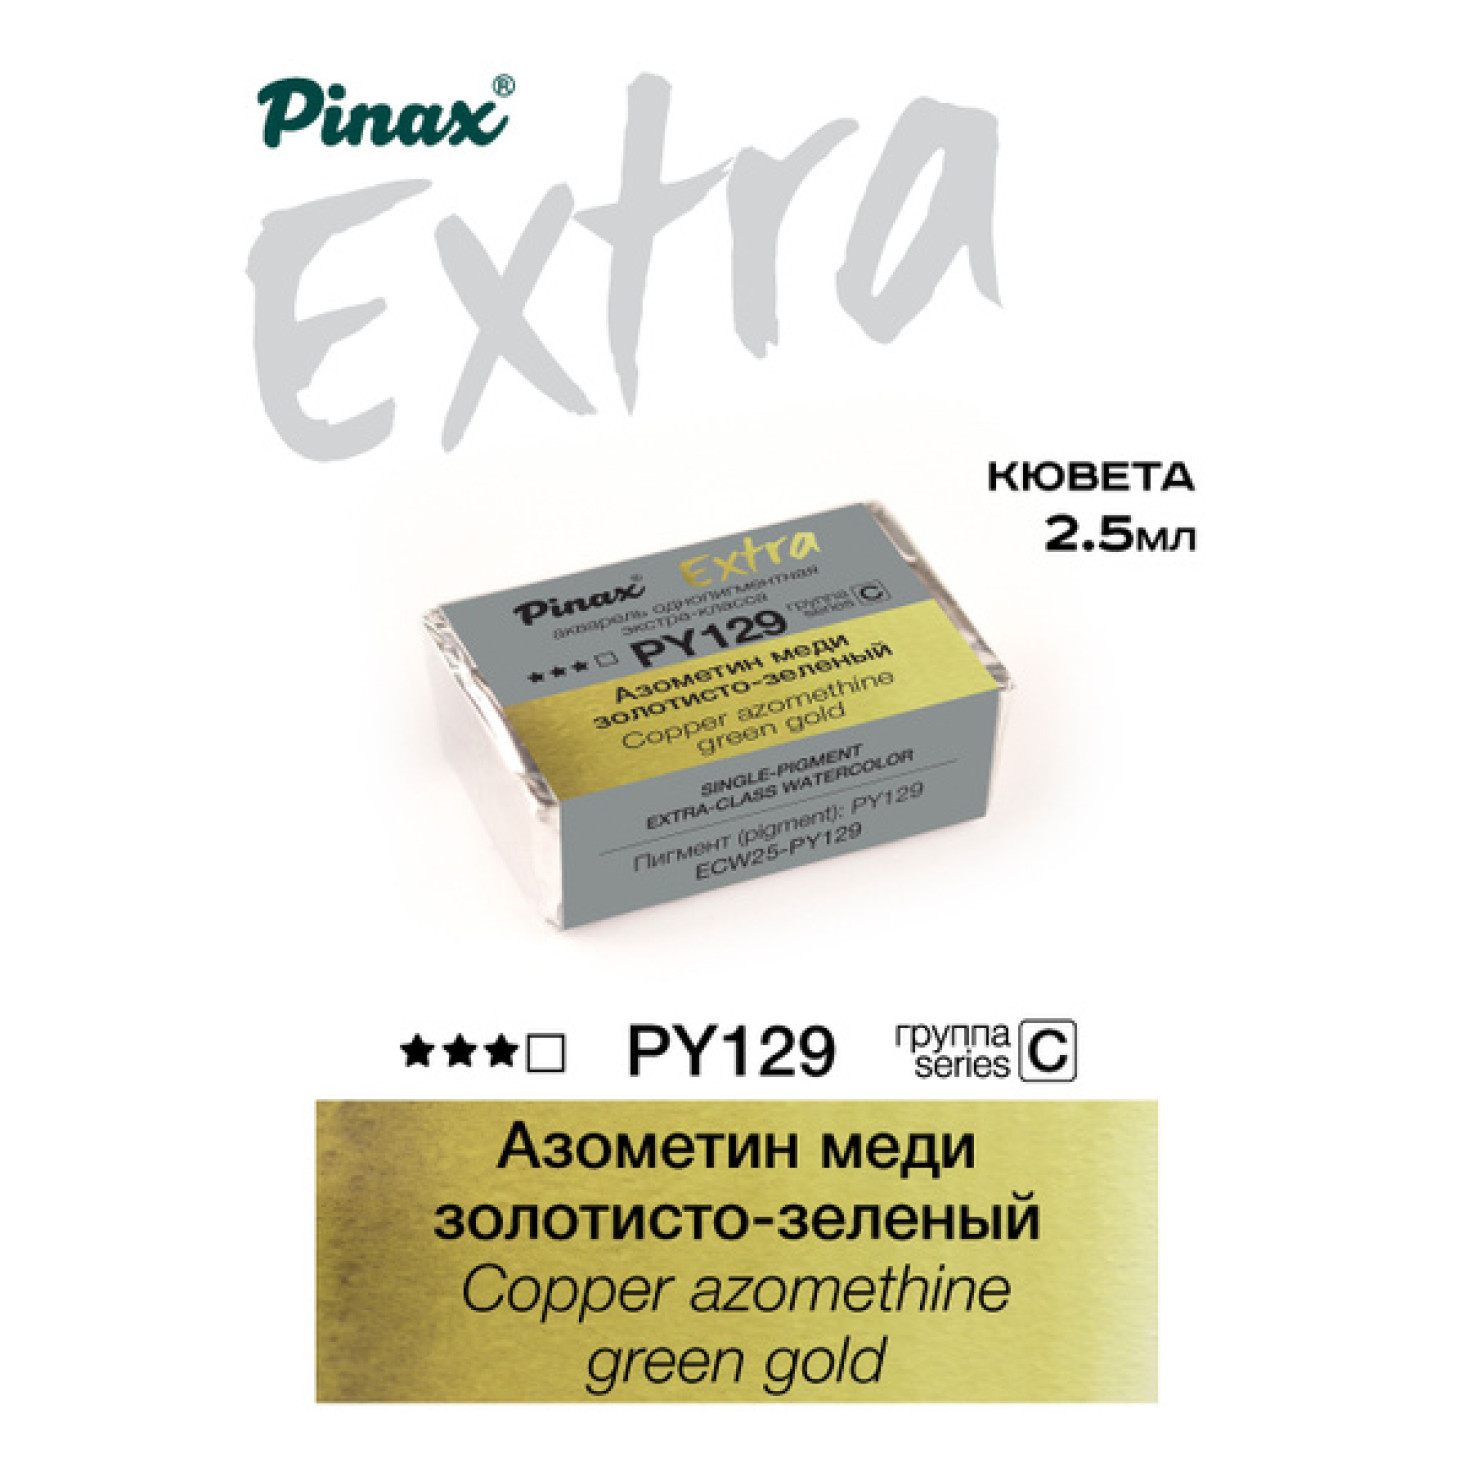 Азометин меди золотисто-зеленый - акварель ЭКСТРА 2.5мл Ser.C - PY129